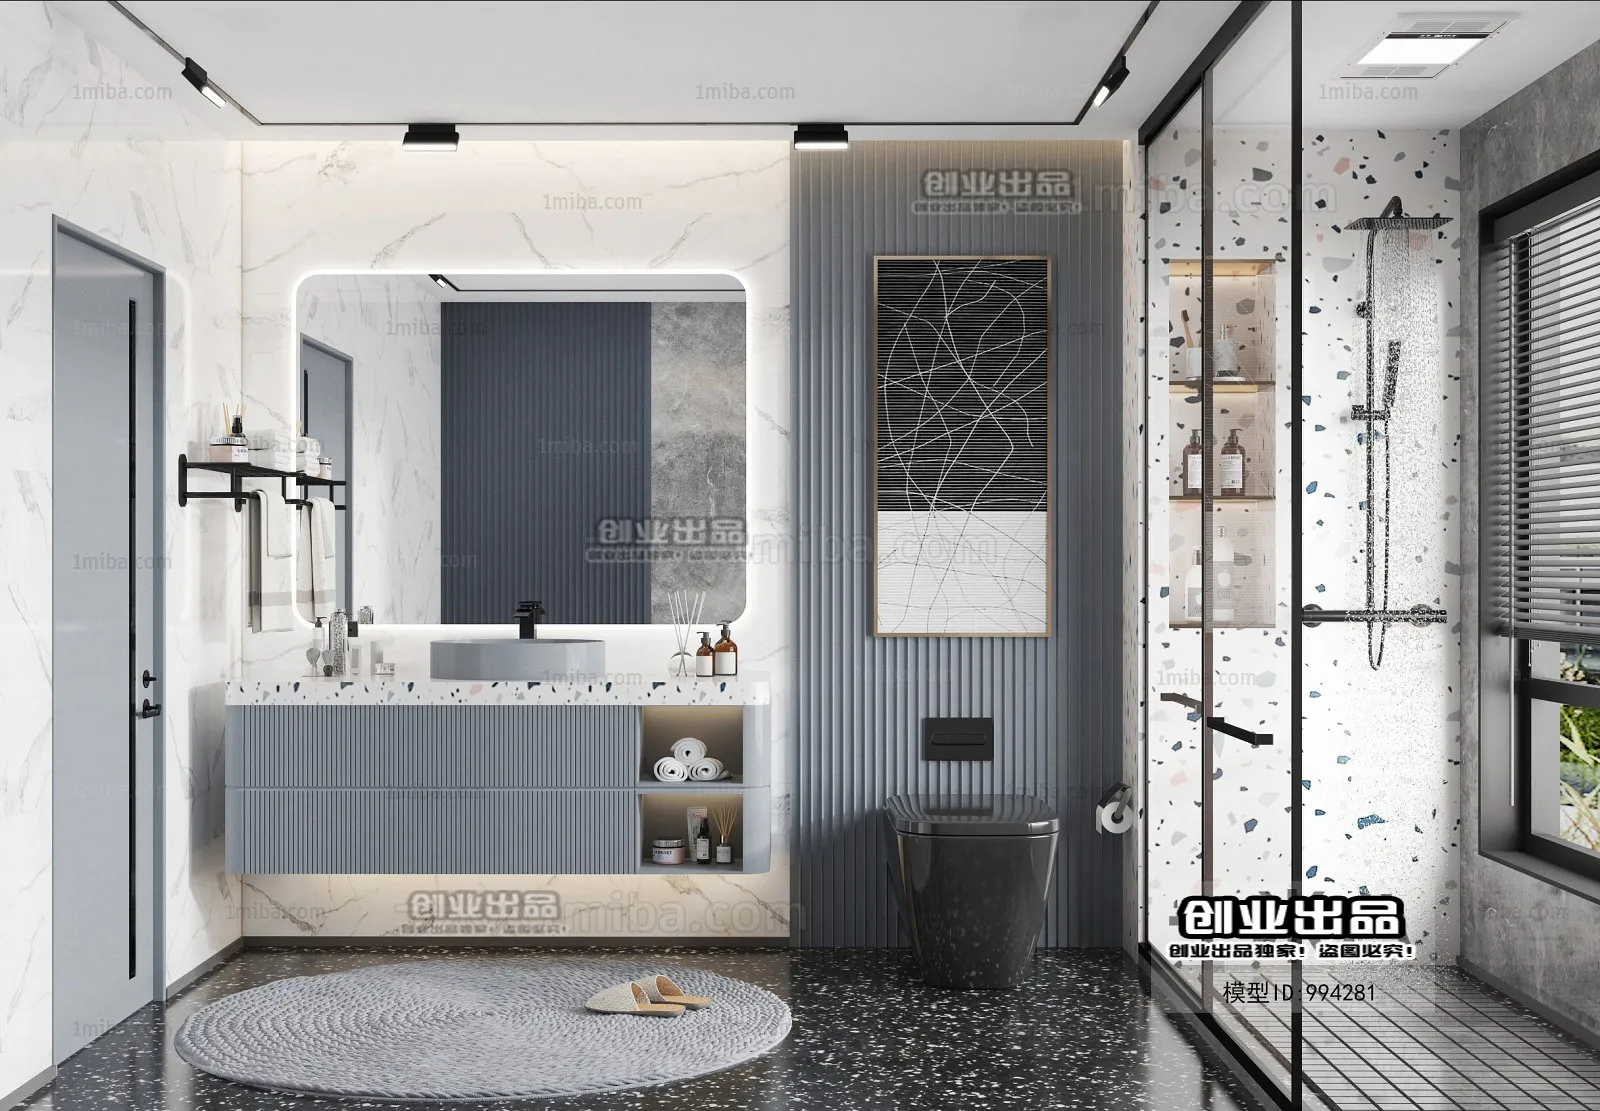 Bathroom – Scandinavian architecture – 014